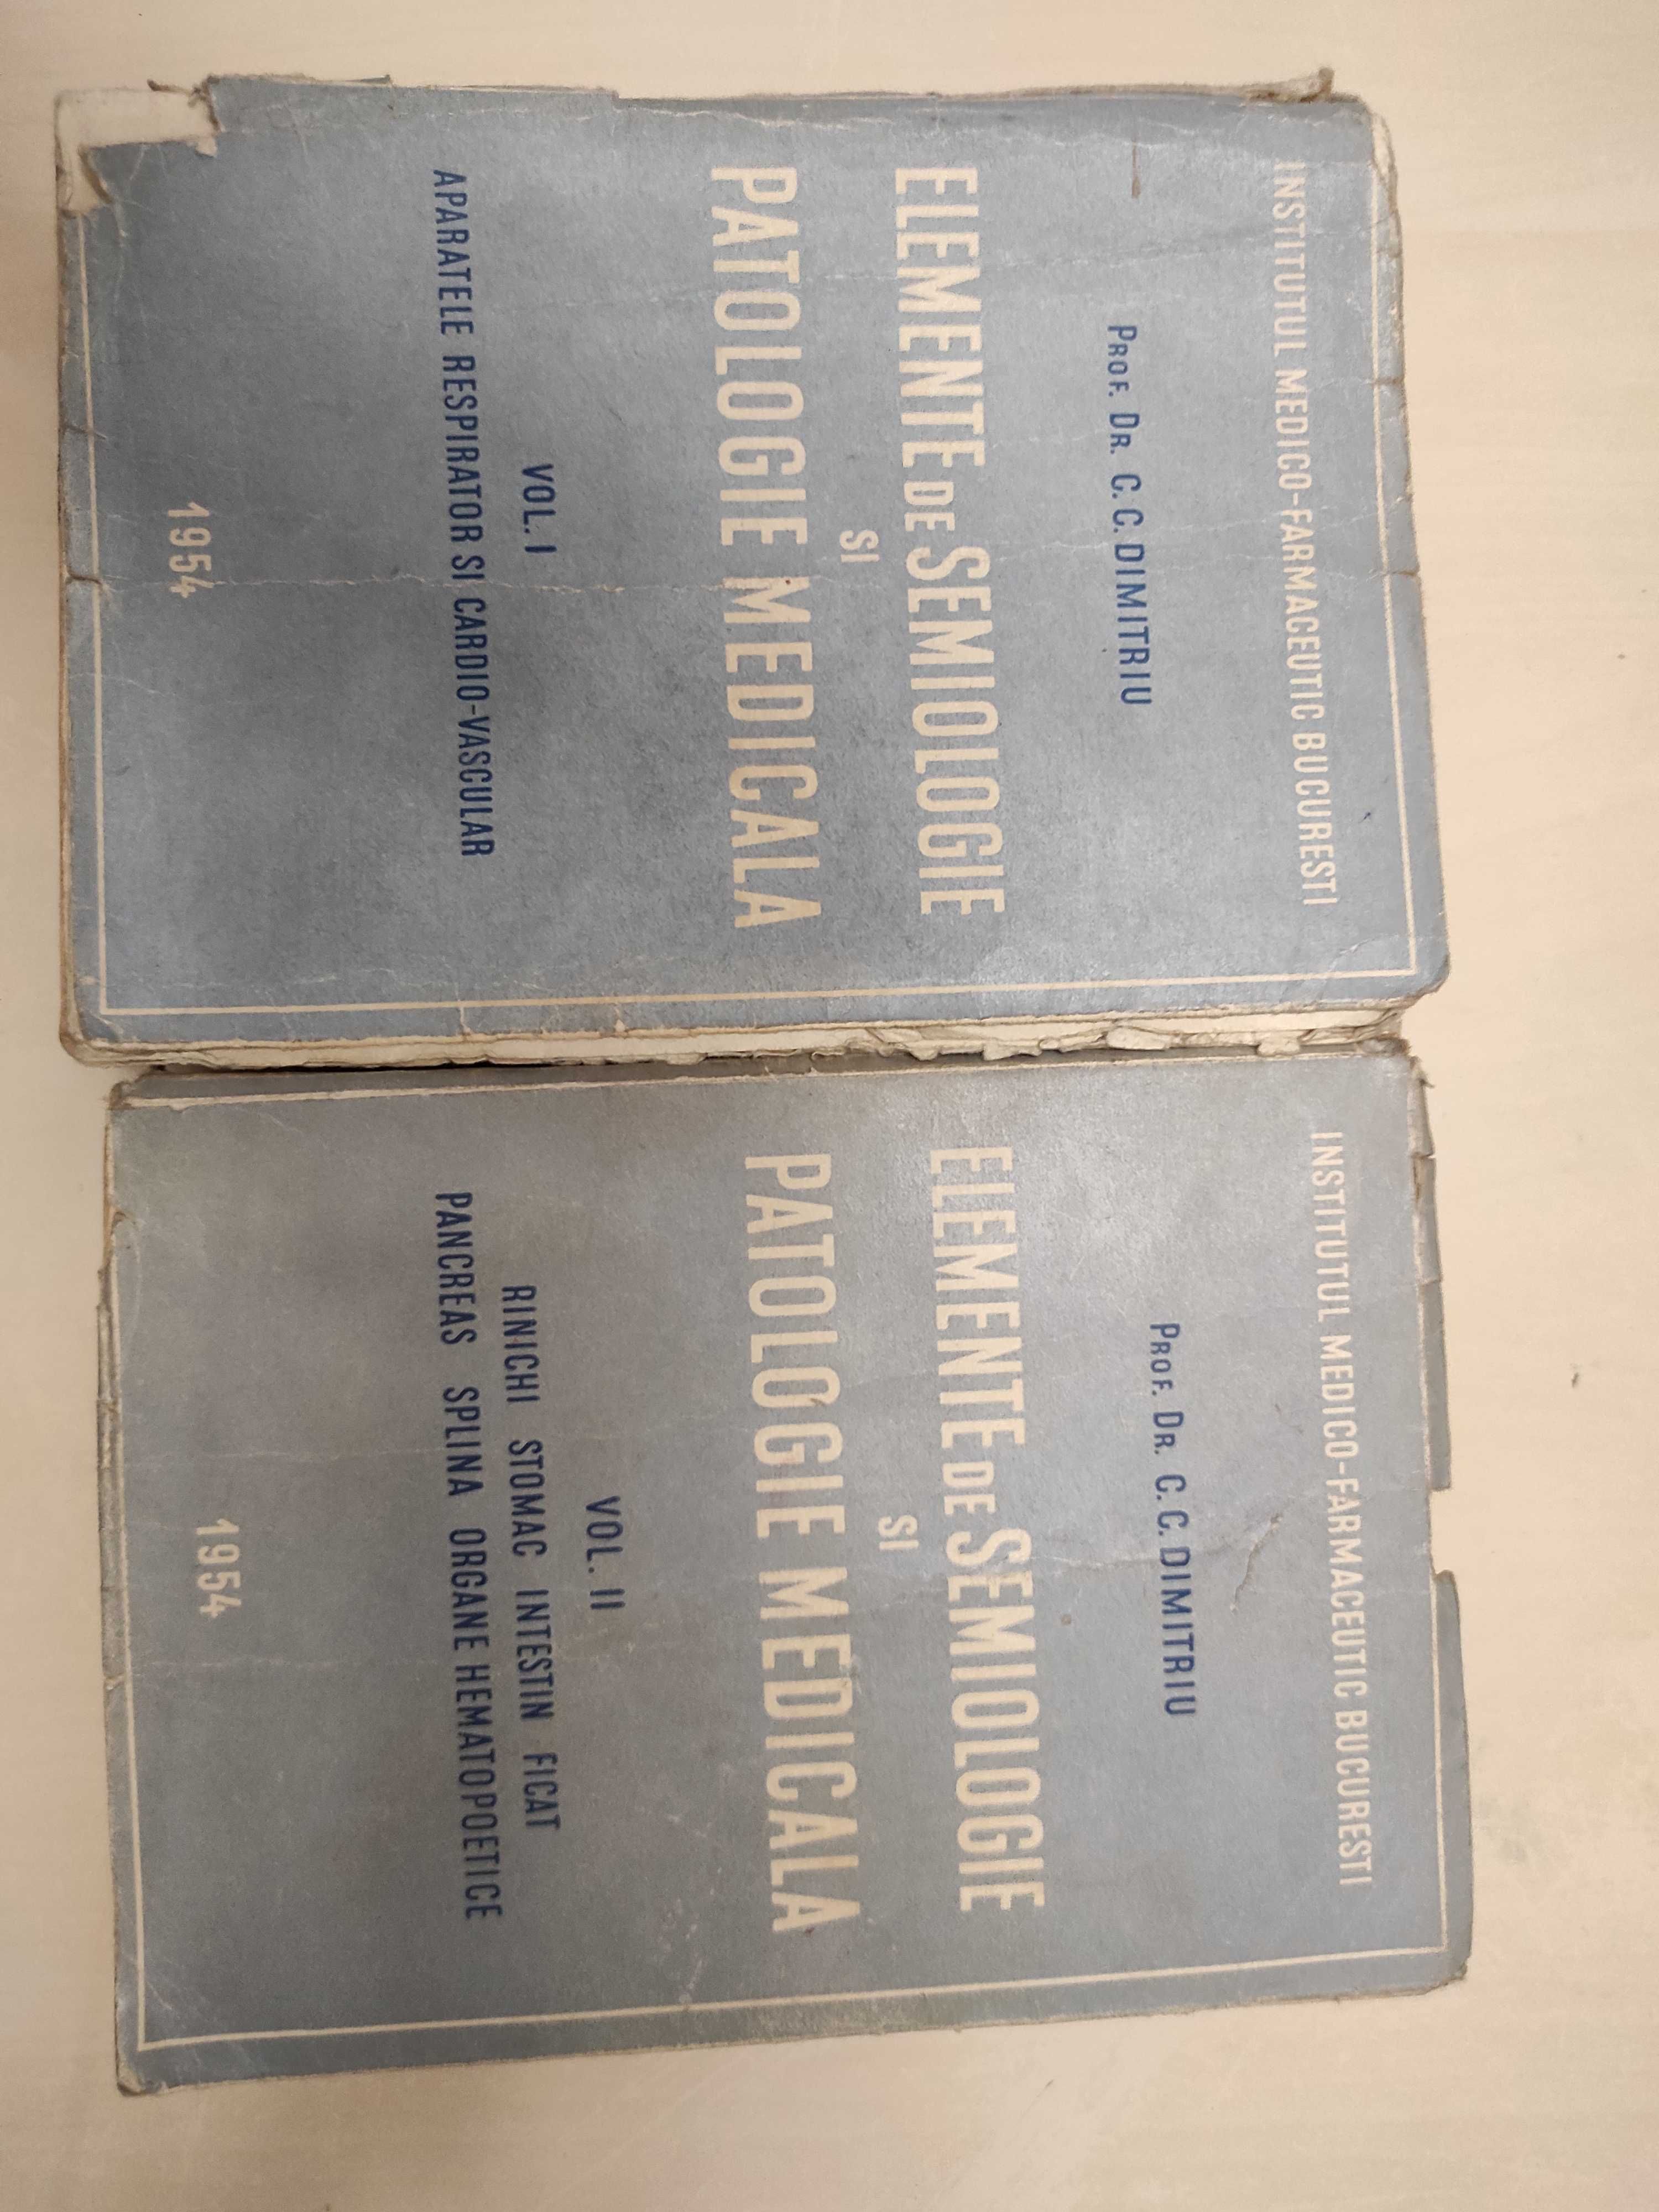 Cărți vechi pentru cunoscători și colecționari